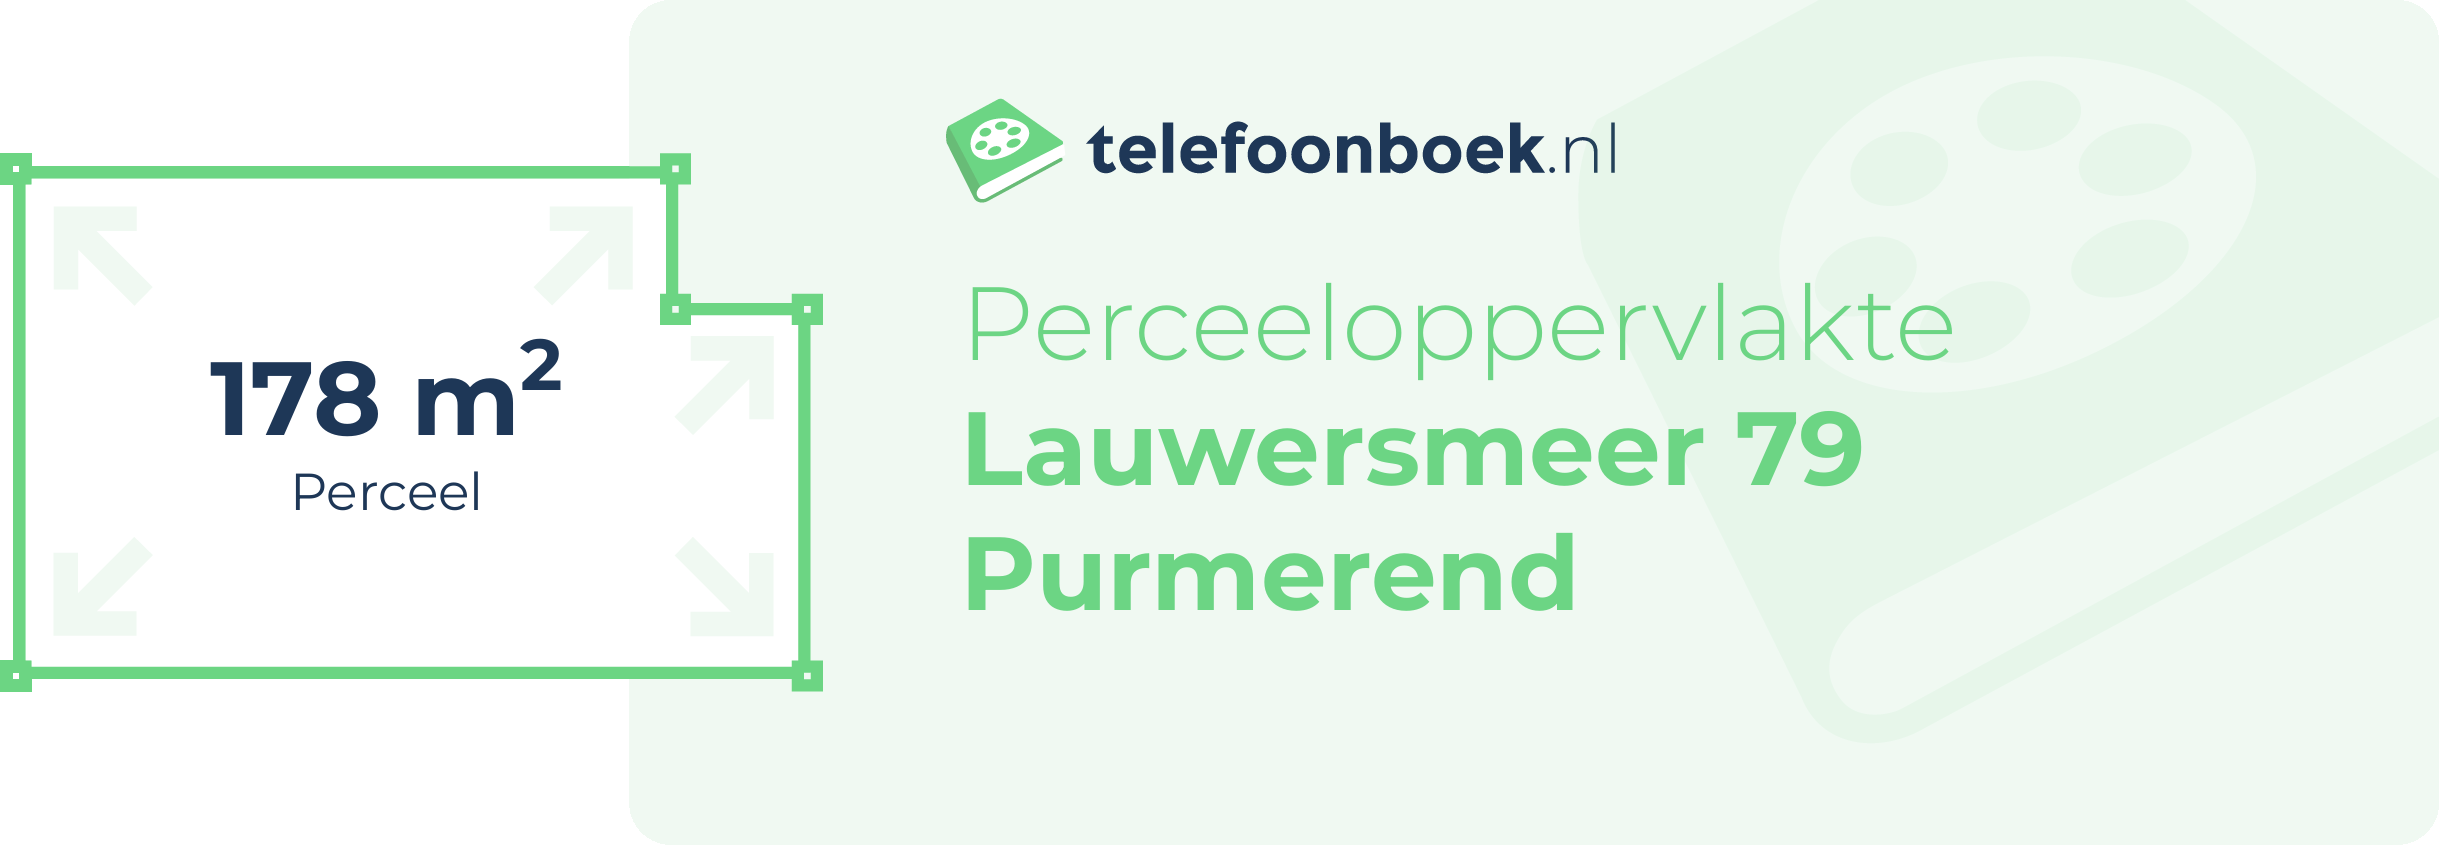 Perceeloppervlakte Lauwersmeer 79 Purmerend